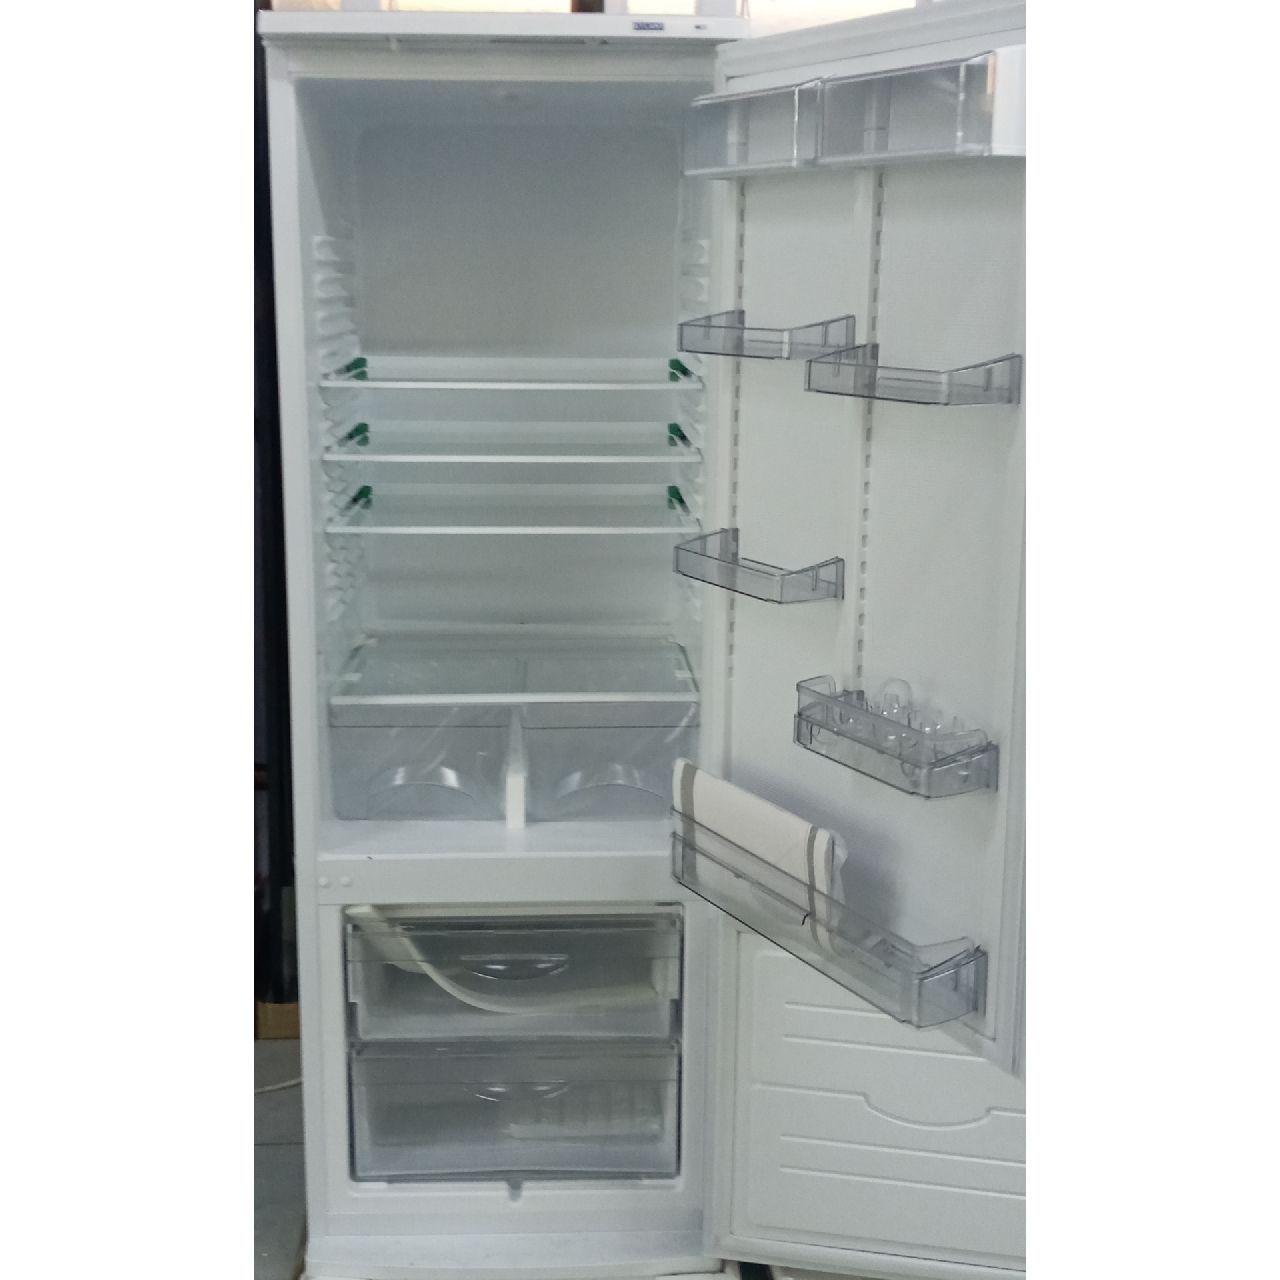 Холодильник двухкамерный Atlant 309 литров